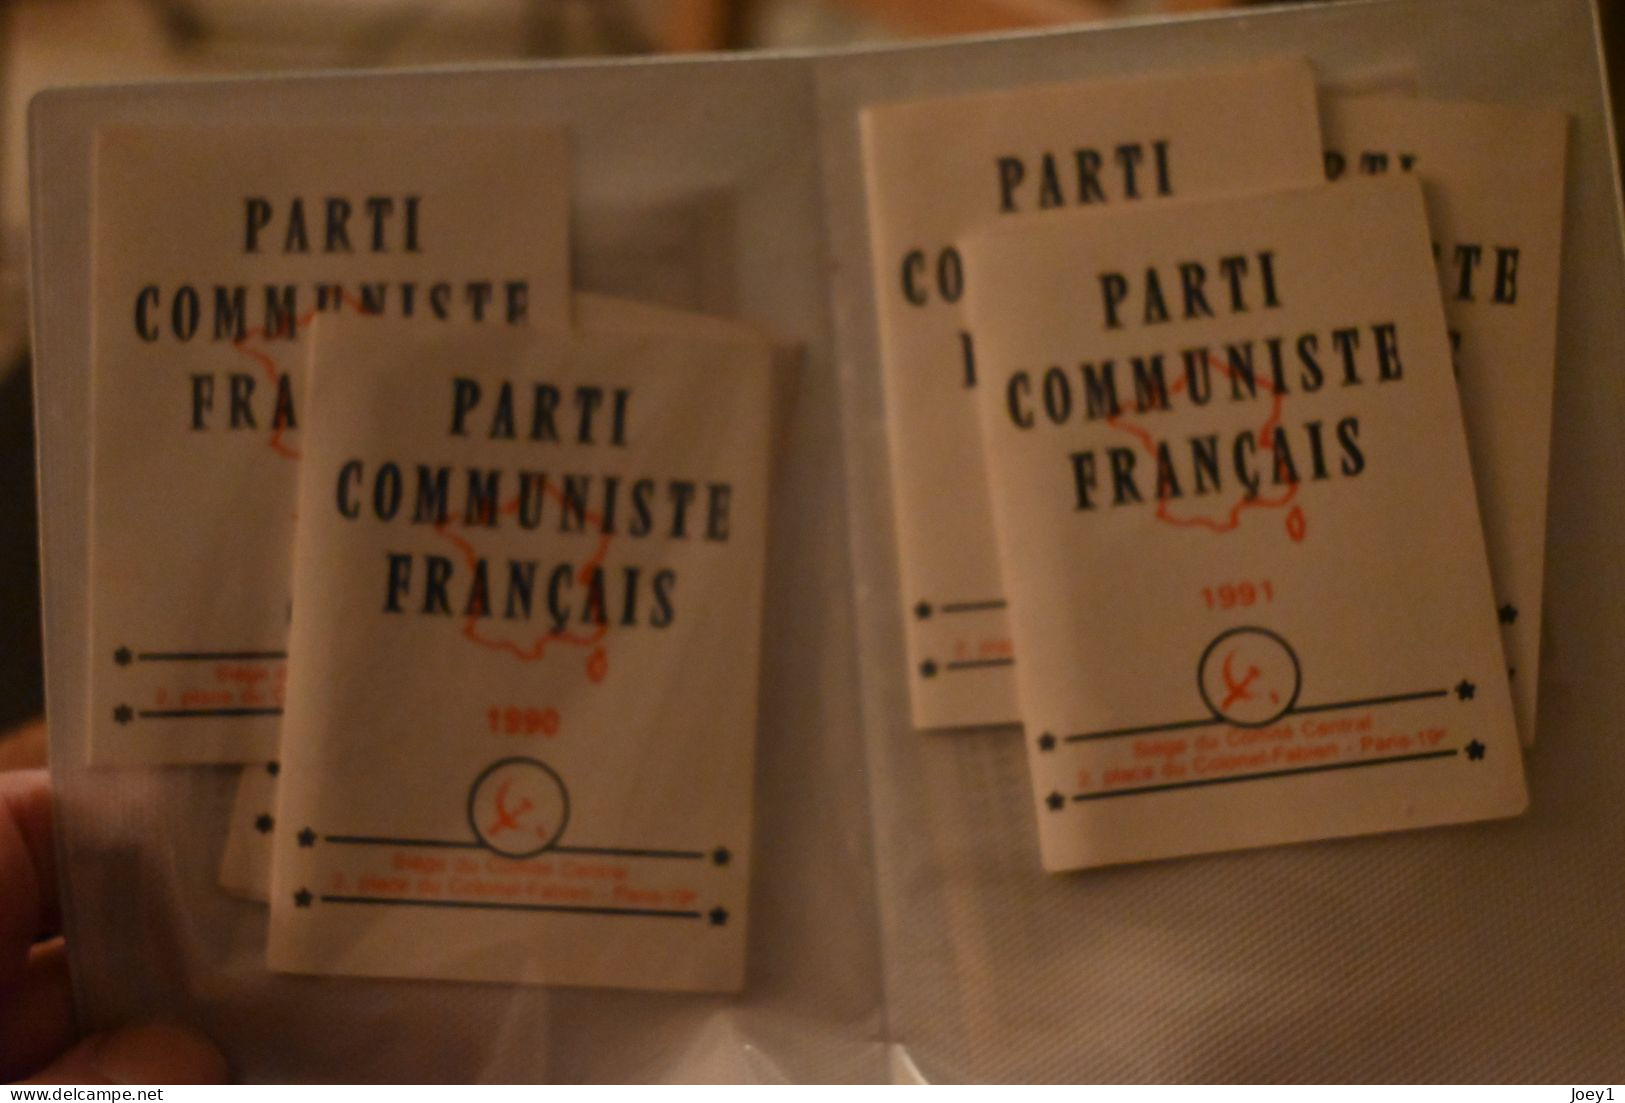 1 ensemble de carte d adhésion au parti Communiste et à la CGT de la même personne avec ses certificats de travail